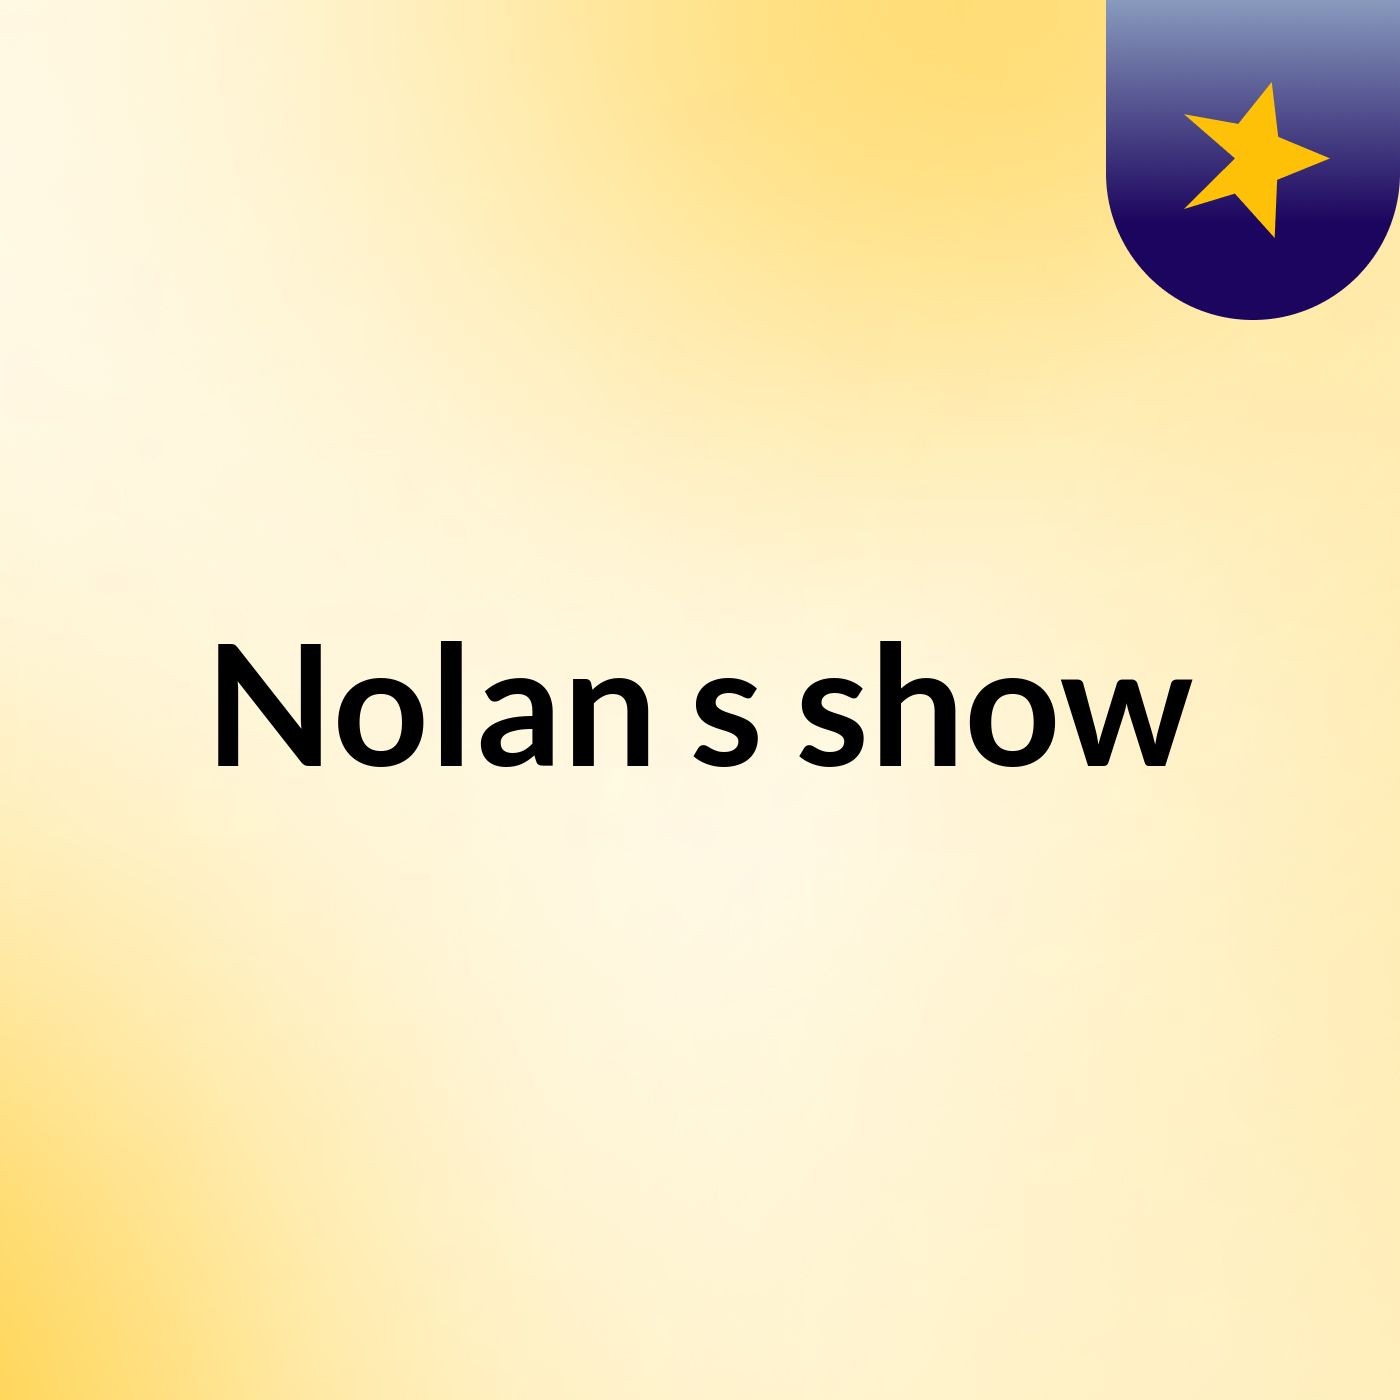 Nolan's show